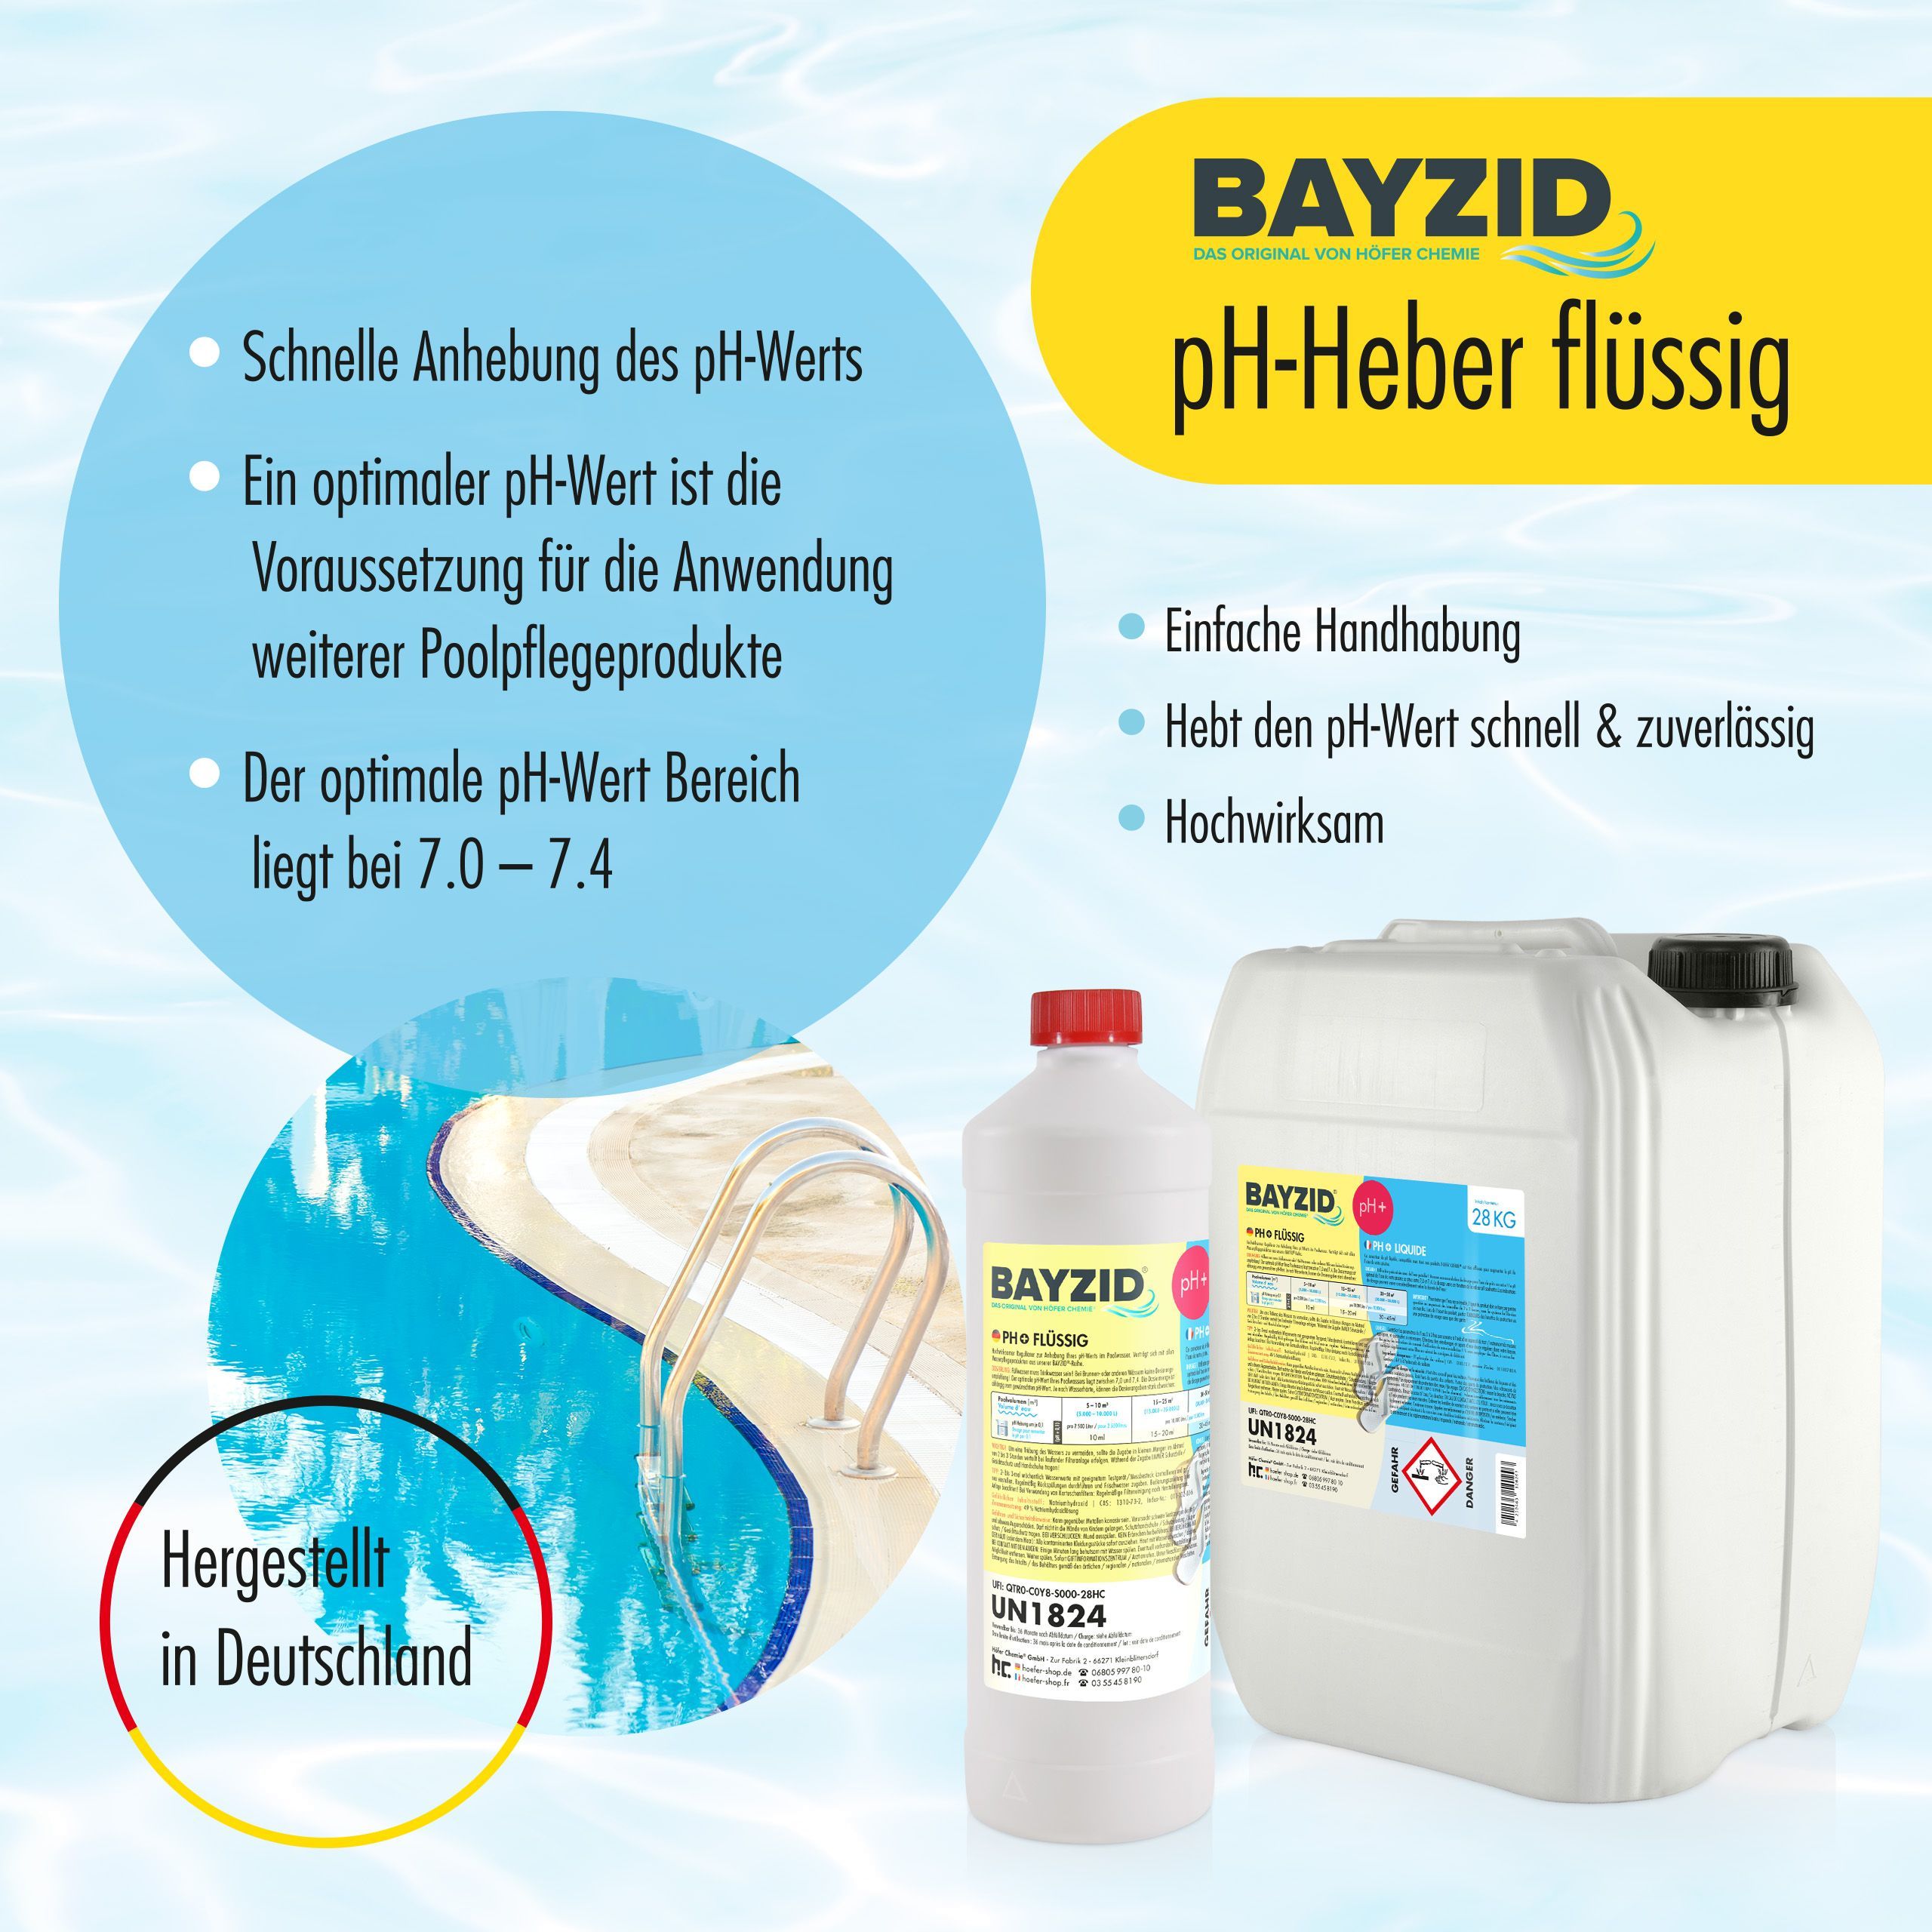 1 kg BAYZID® pH Plus flüssig